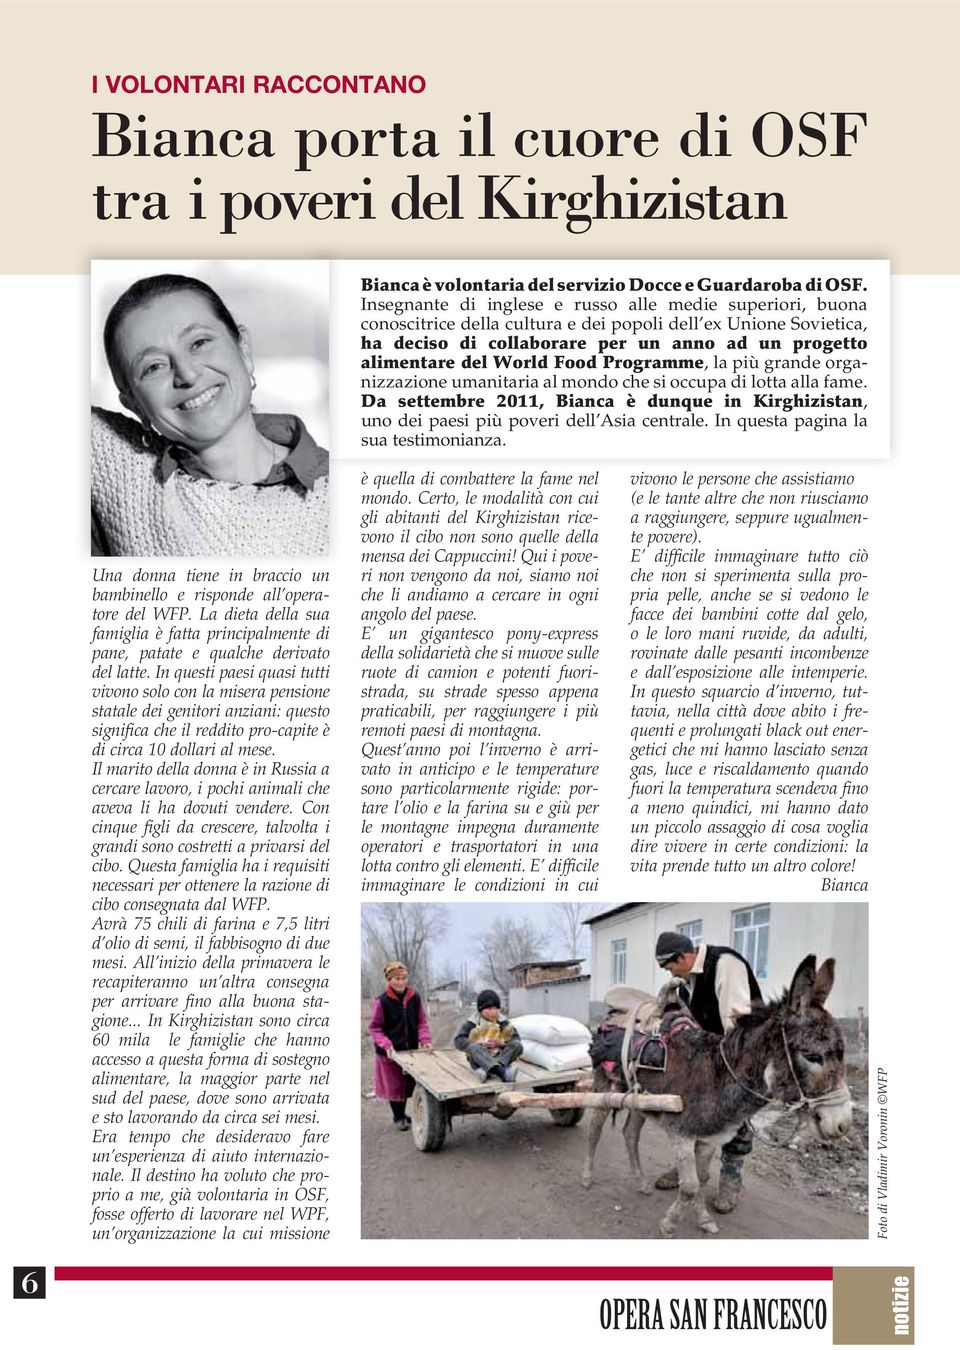 Food Programme, la più grande organizzazione umanitaria al mondo che si occupa di lotta alla fame. Da settembre 2011, Bianca è dunque in Kirghizistan, uno dei paesi più poveri dell Asia centrale.